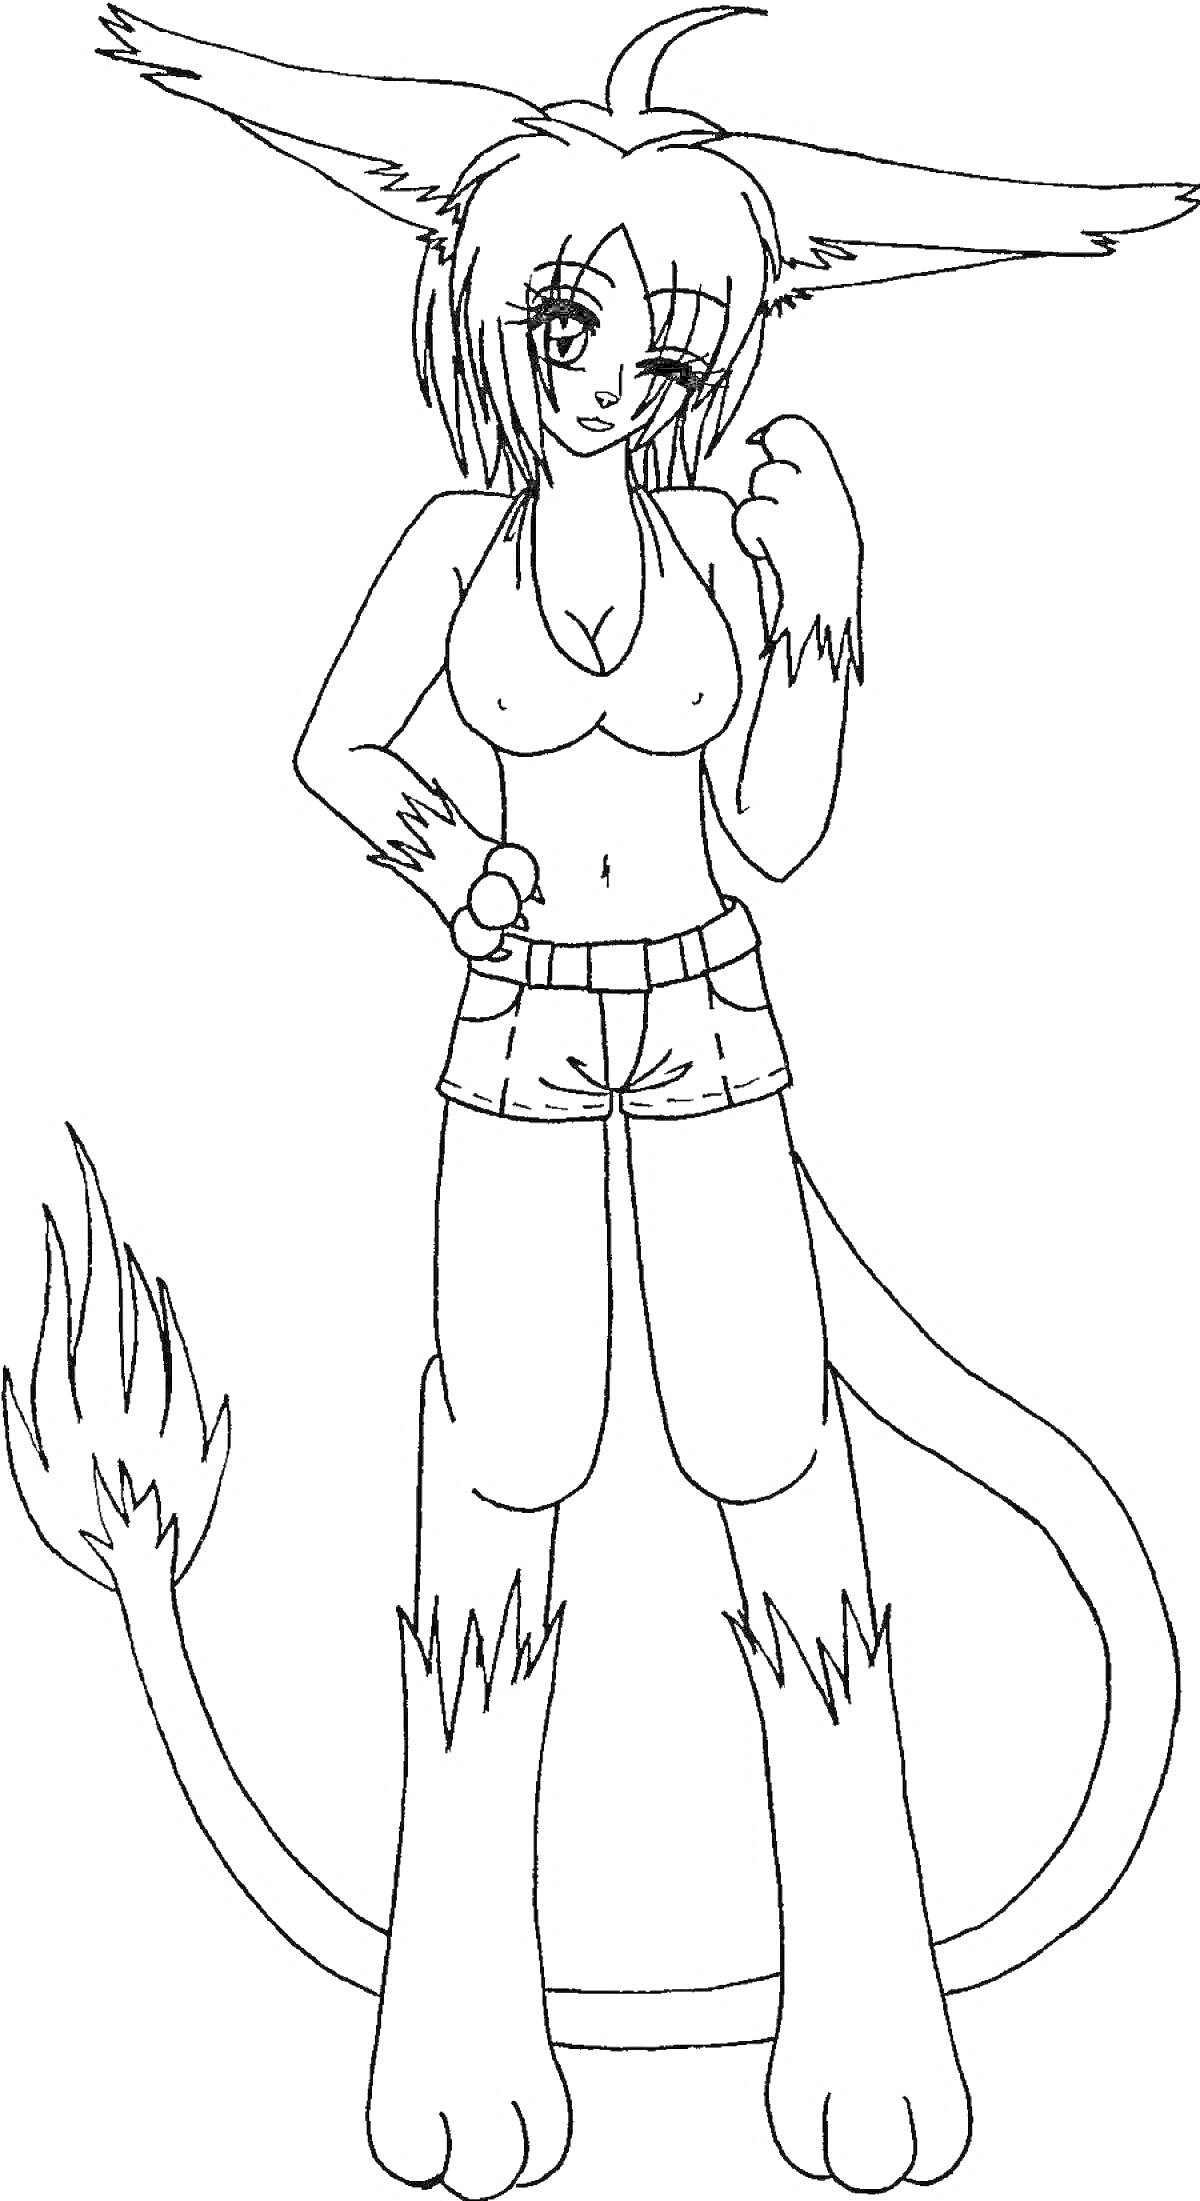 Раскраска Фурри персонаж с большими ушами, пушистым хвостом, топом и шортами